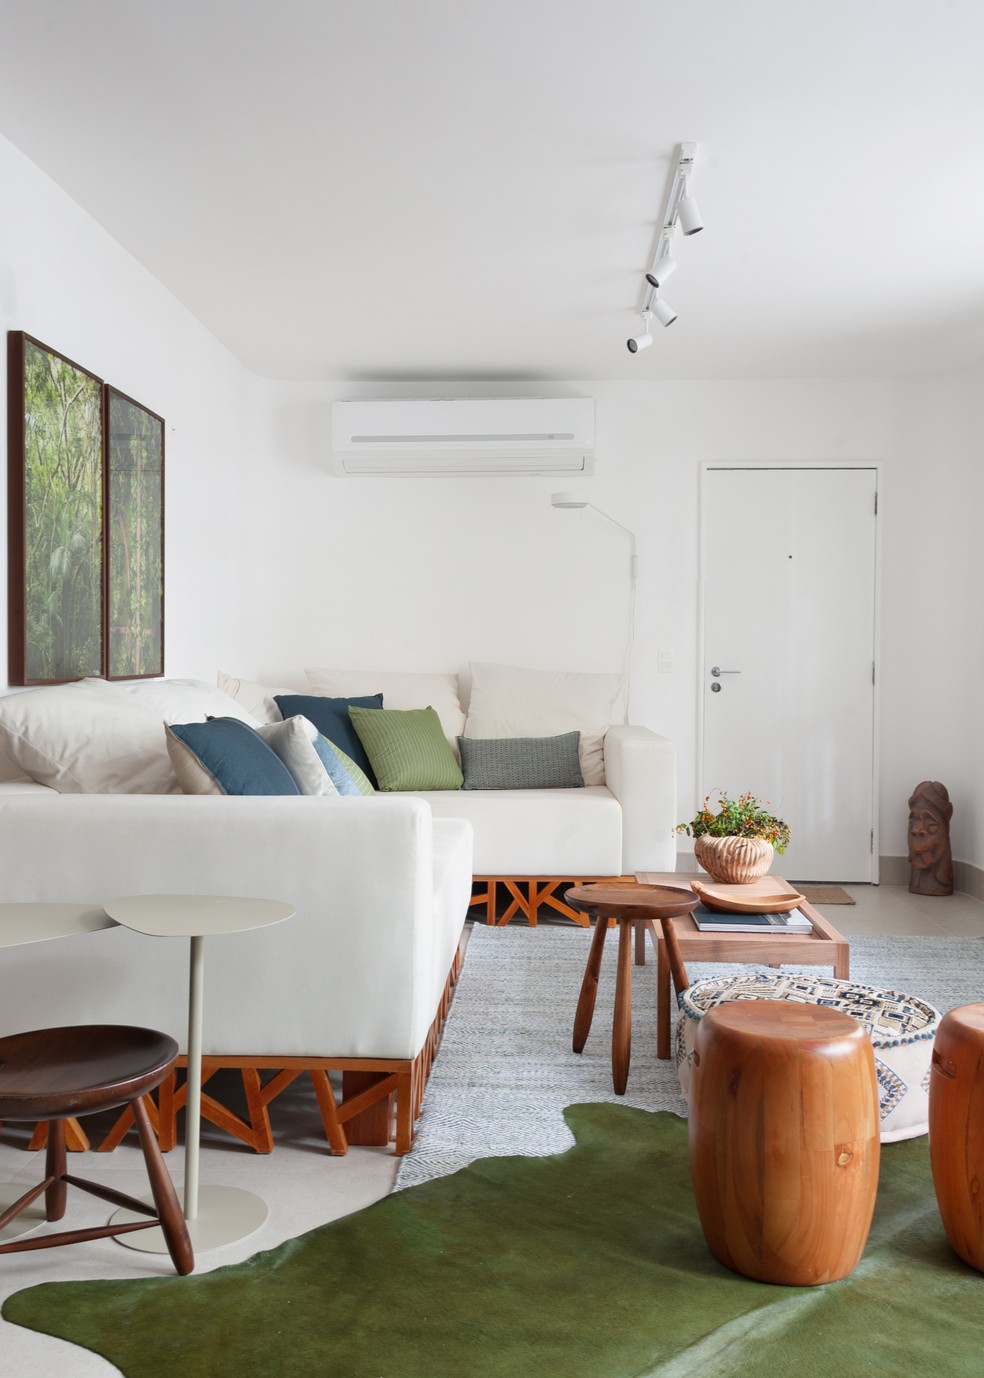 Sala de estar ganhou móveis em madeira, que constratam com o tom de verde escolhido para a decoração, como no tapete — Foto: Leonardo Olicos